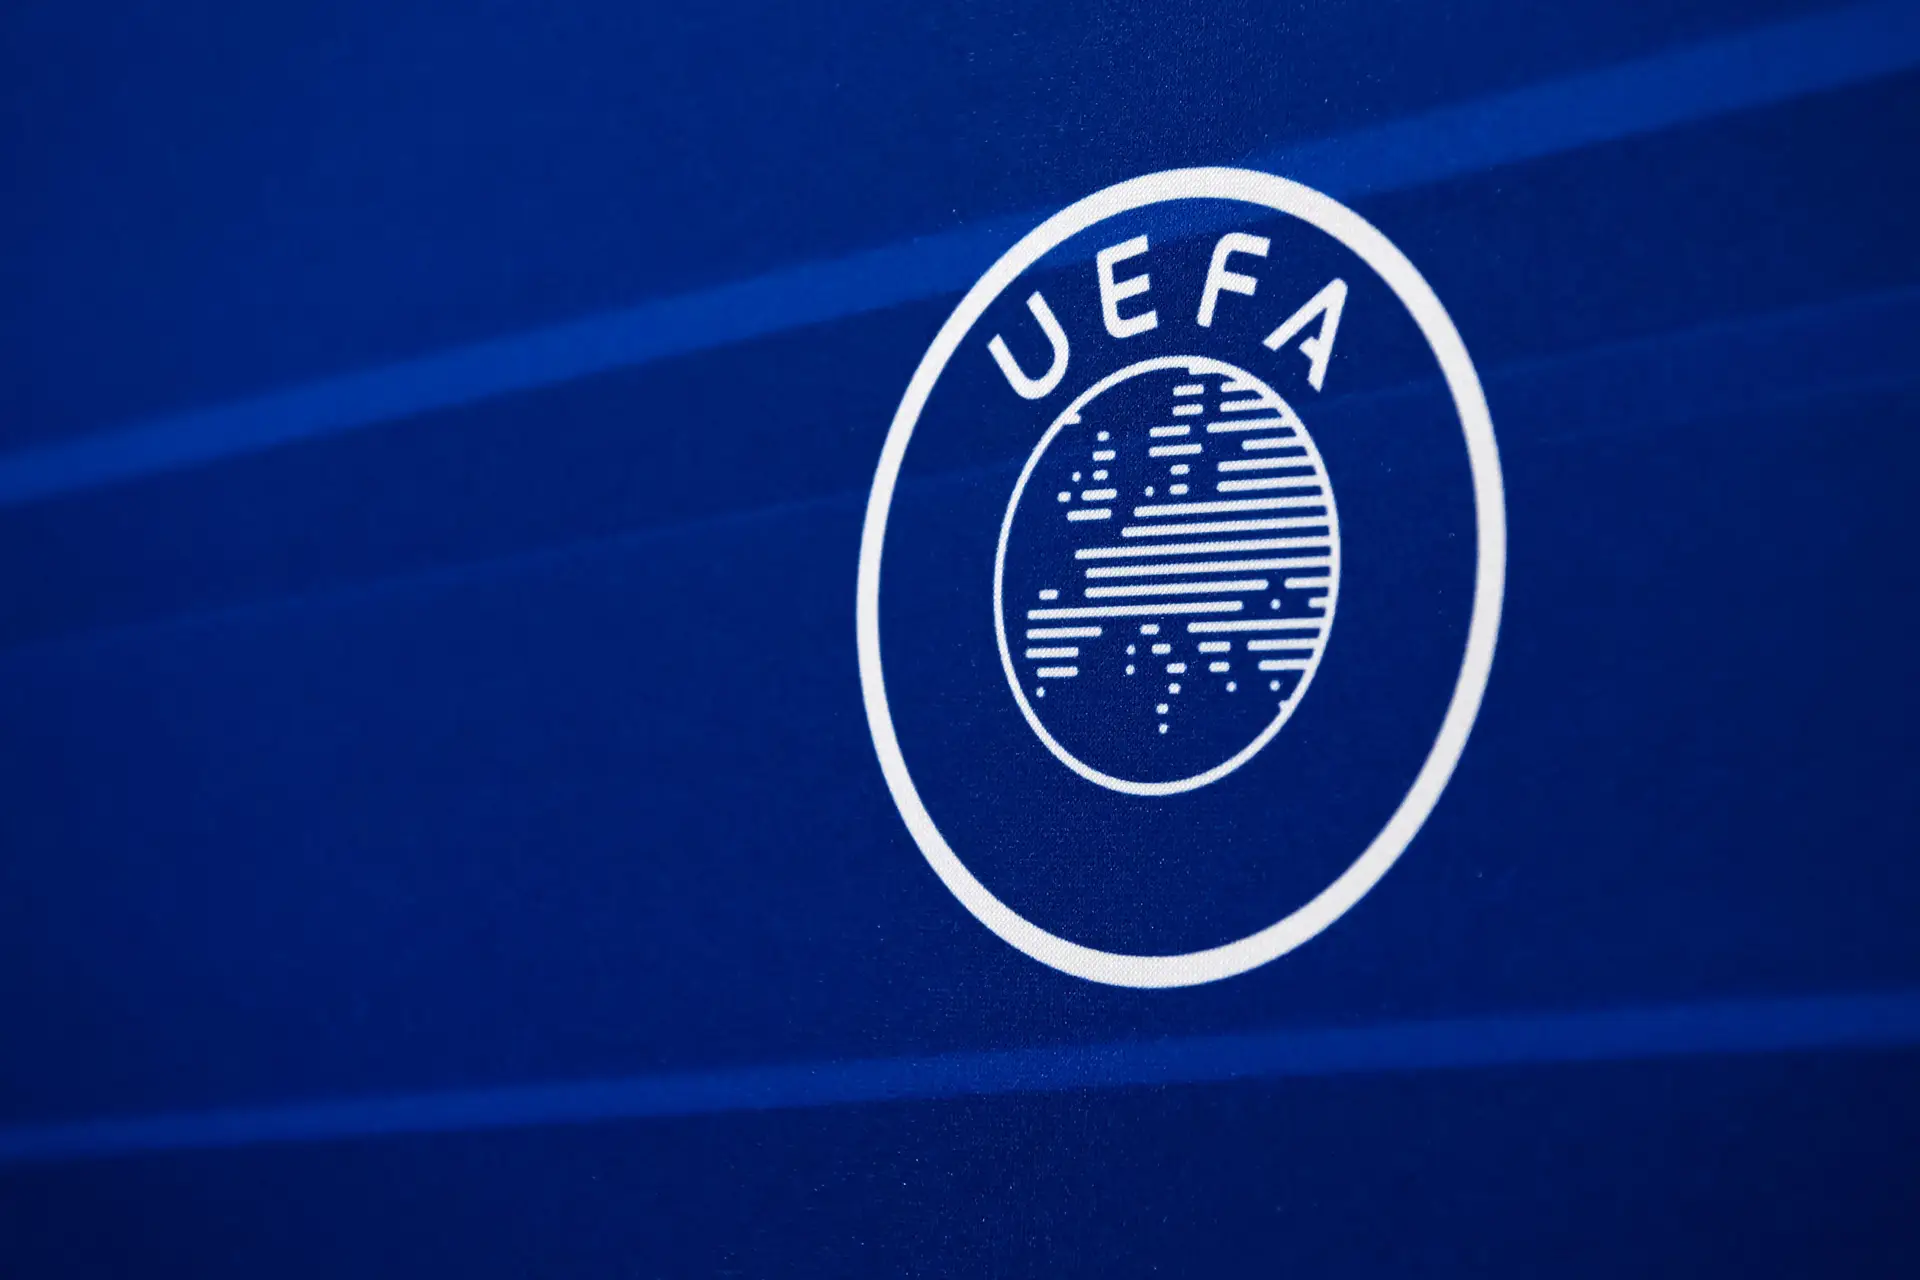 Sorteios da Champions League: quartos-de-final, meias-finais e final, UEFA Champions  League 2022/23